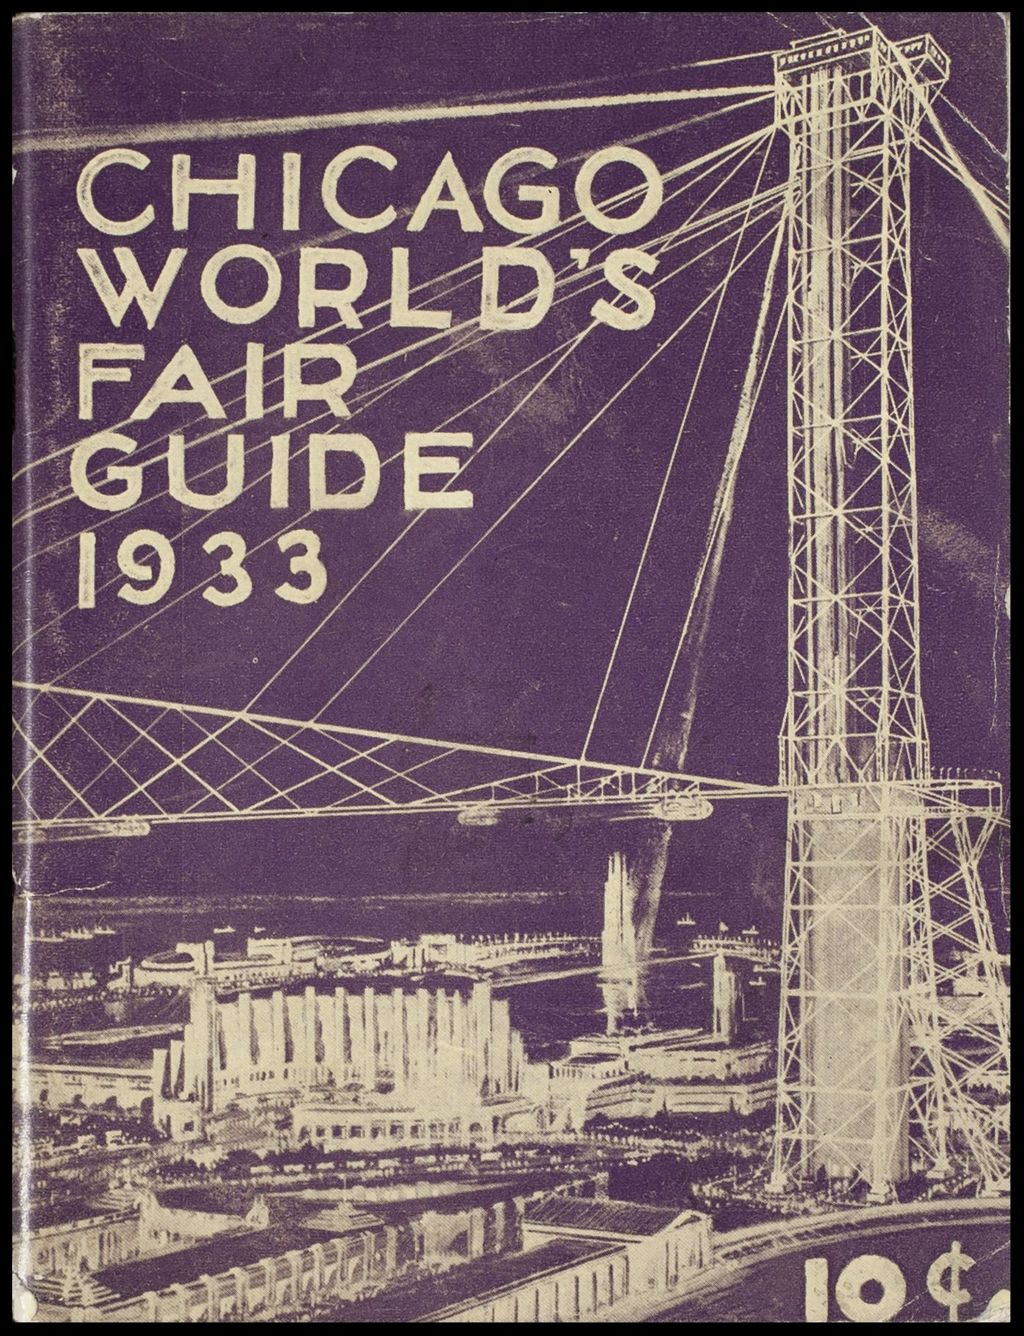 Chicago World's Fair Guide, 1933-1934 (Folder 16-194)